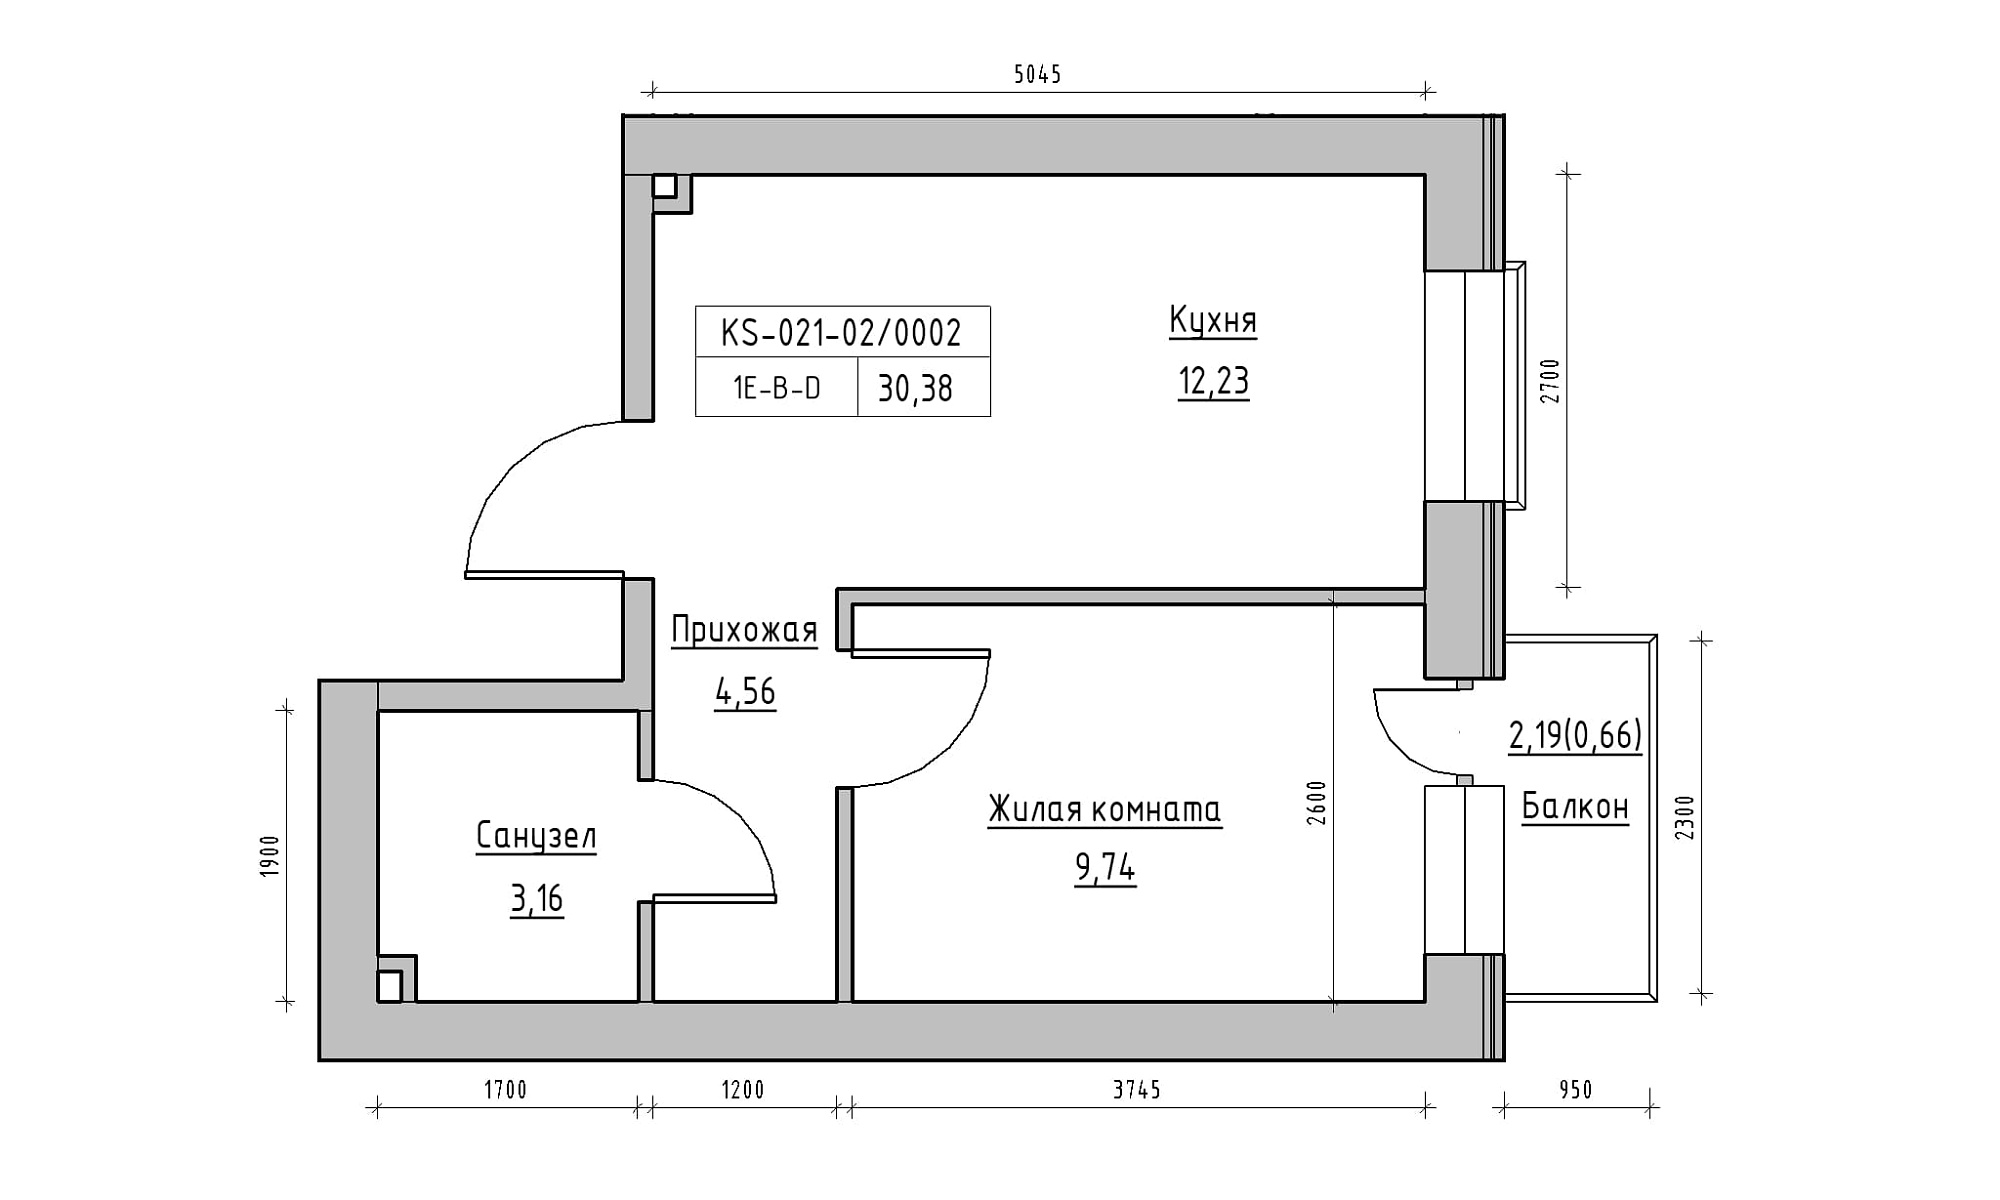 Планировка 1-к квартира площей 30.38м2, KS-021-02/0002.